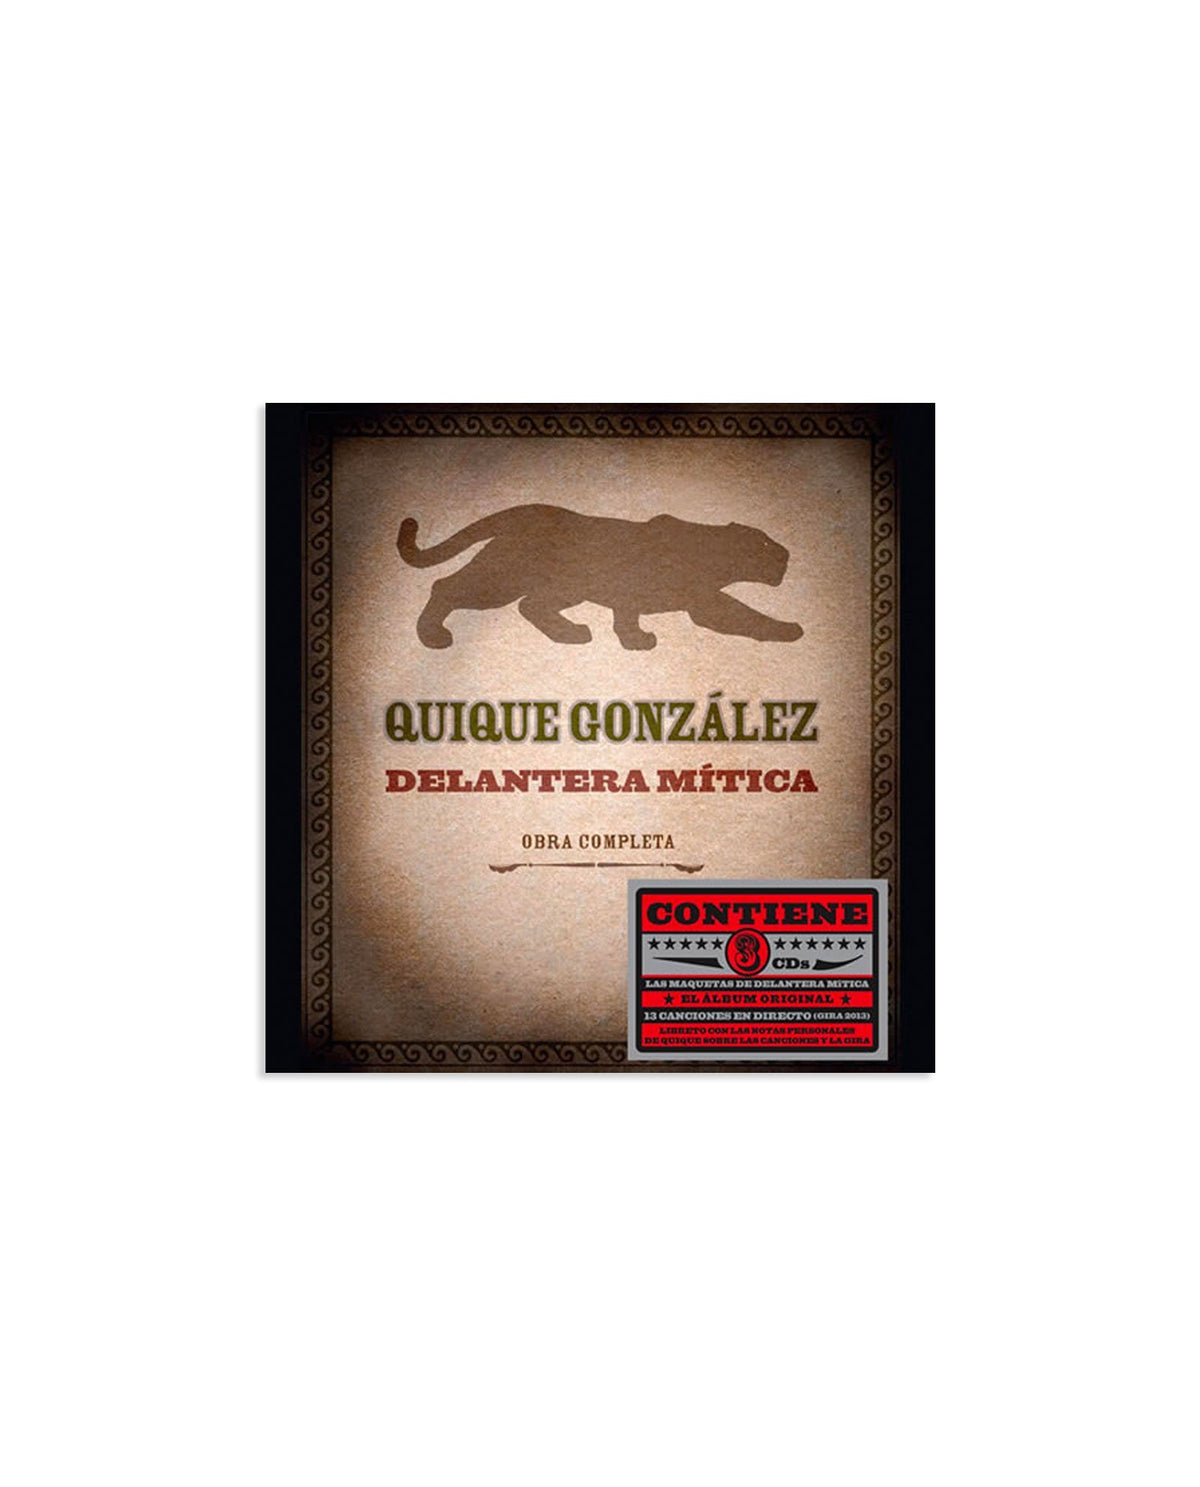 Quique González - DELANTERA MÍTICA - Obra Completa (Last Tour Records, 2013) - Rocktud - Quique González